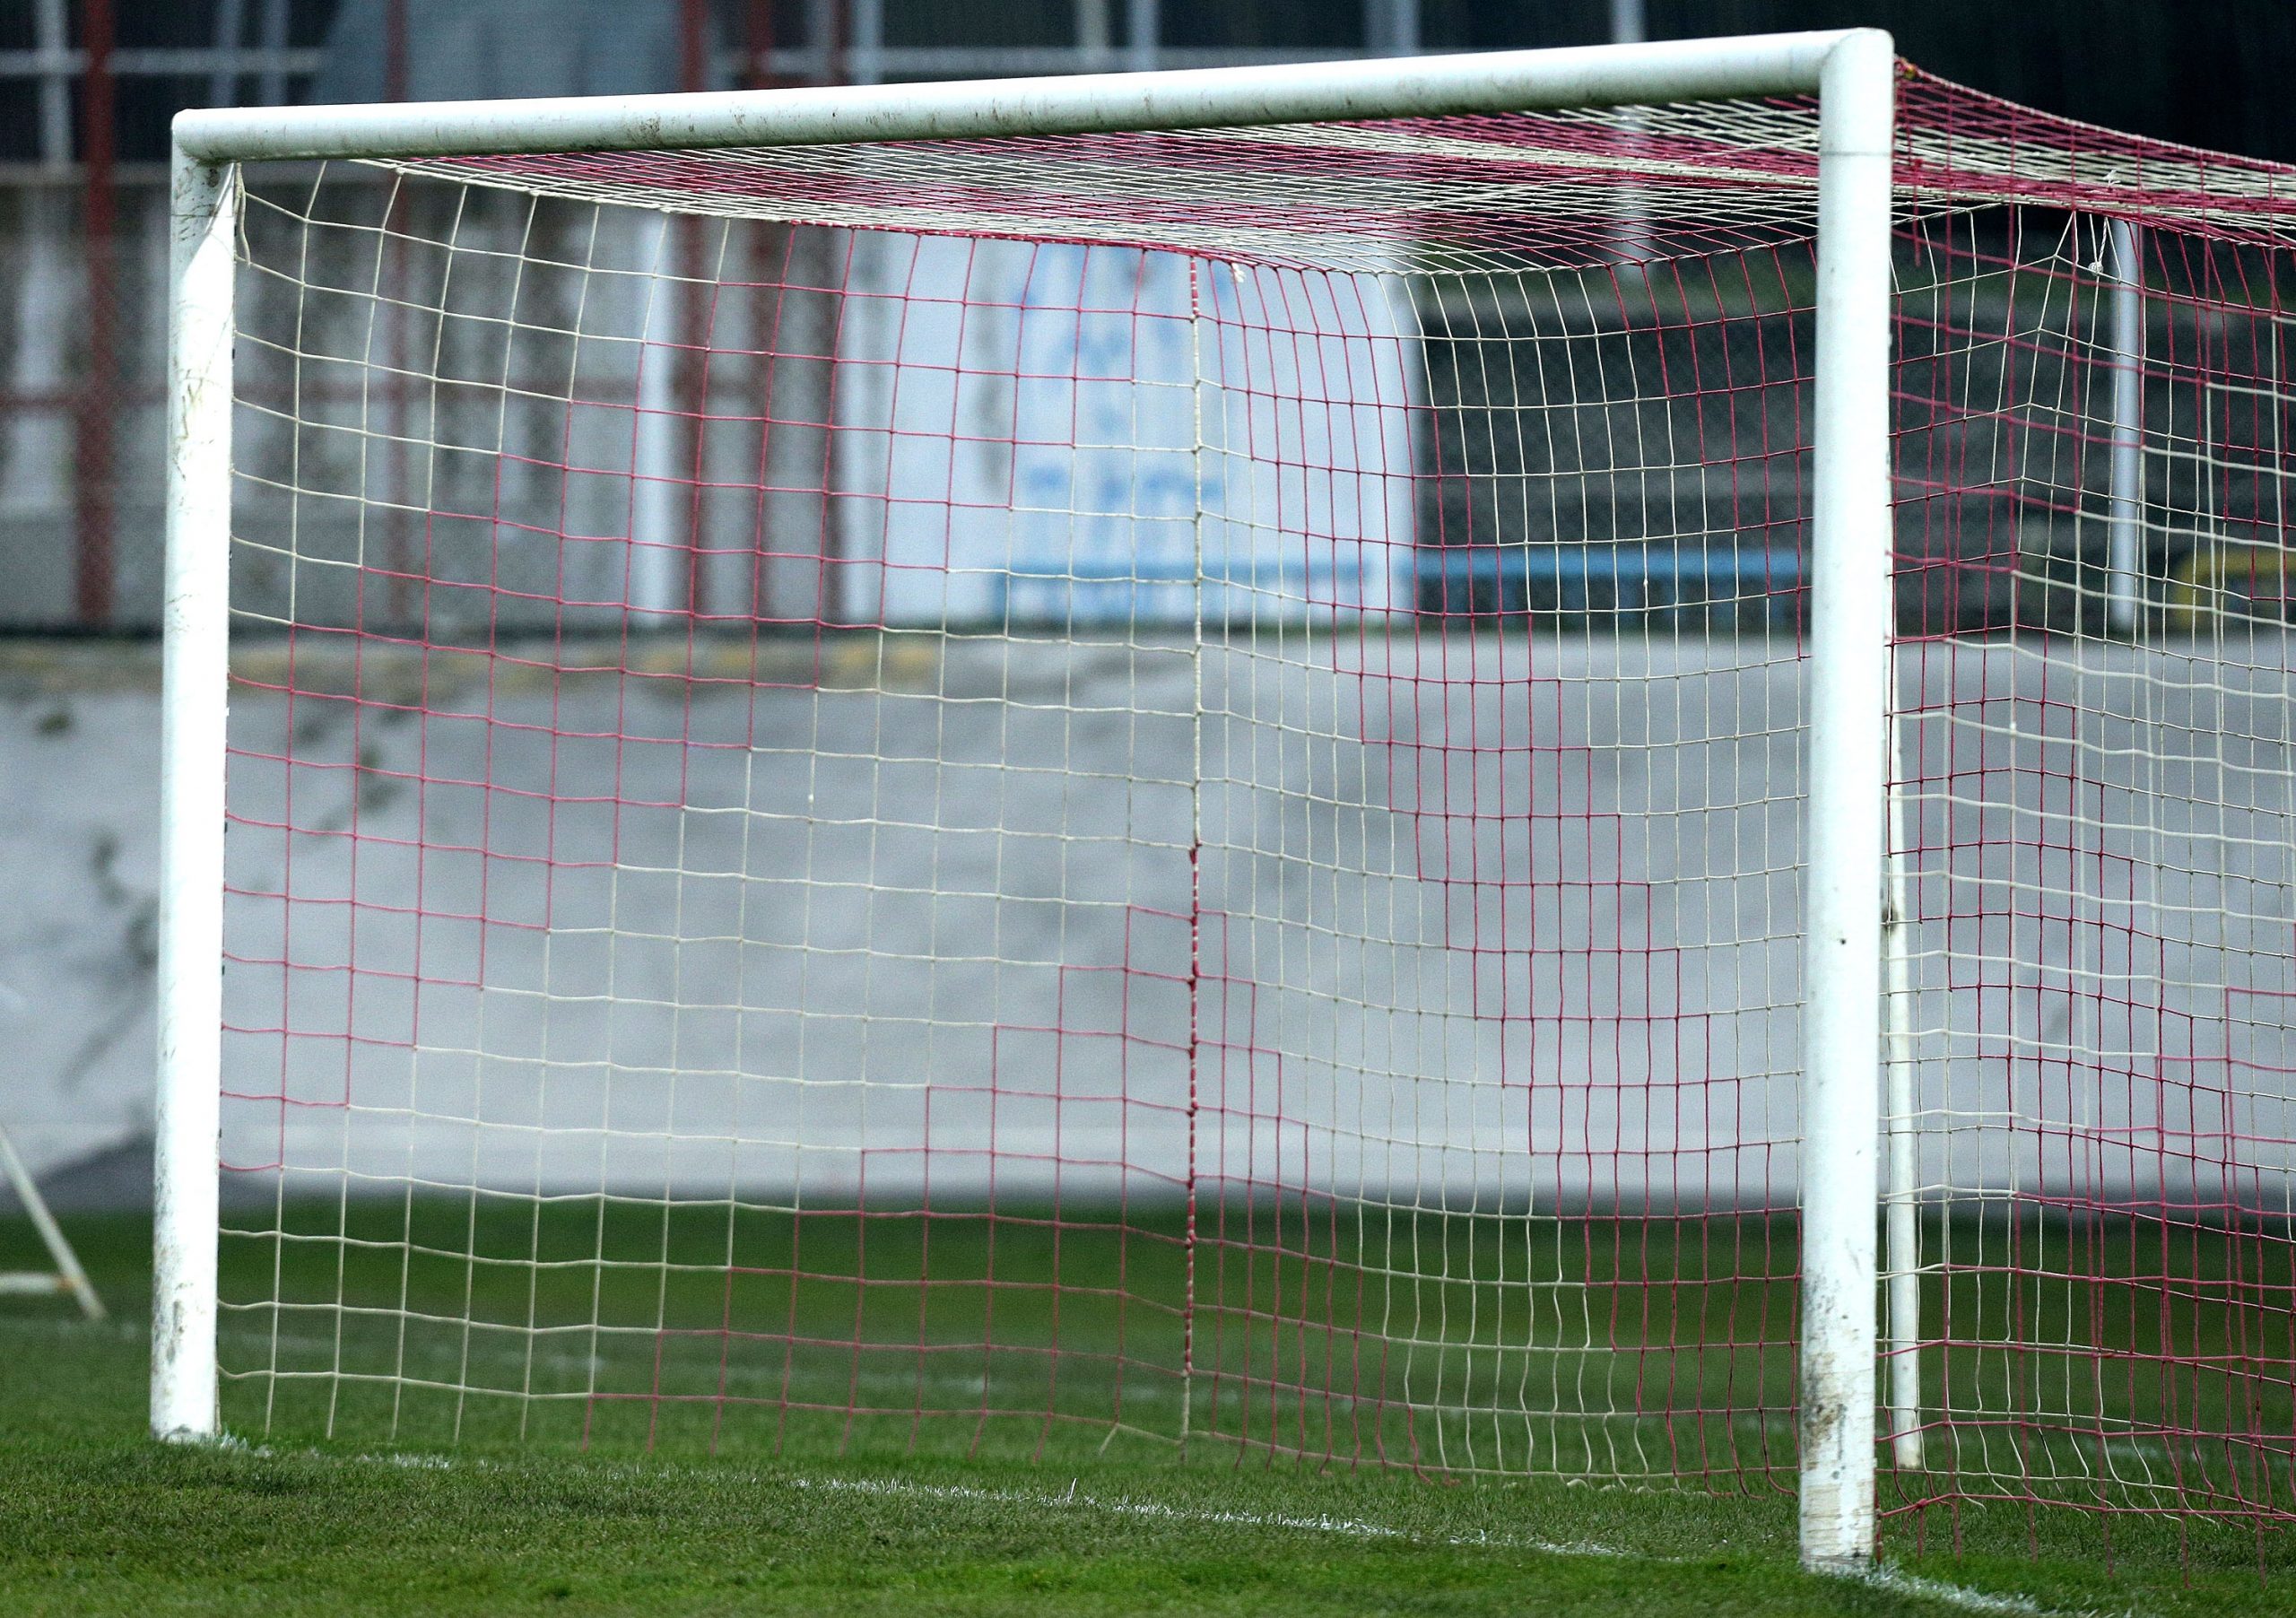 23.11.2014., Zagreb - Nogometni gol. 
Photo: Marko Lukunic/PIXSELL